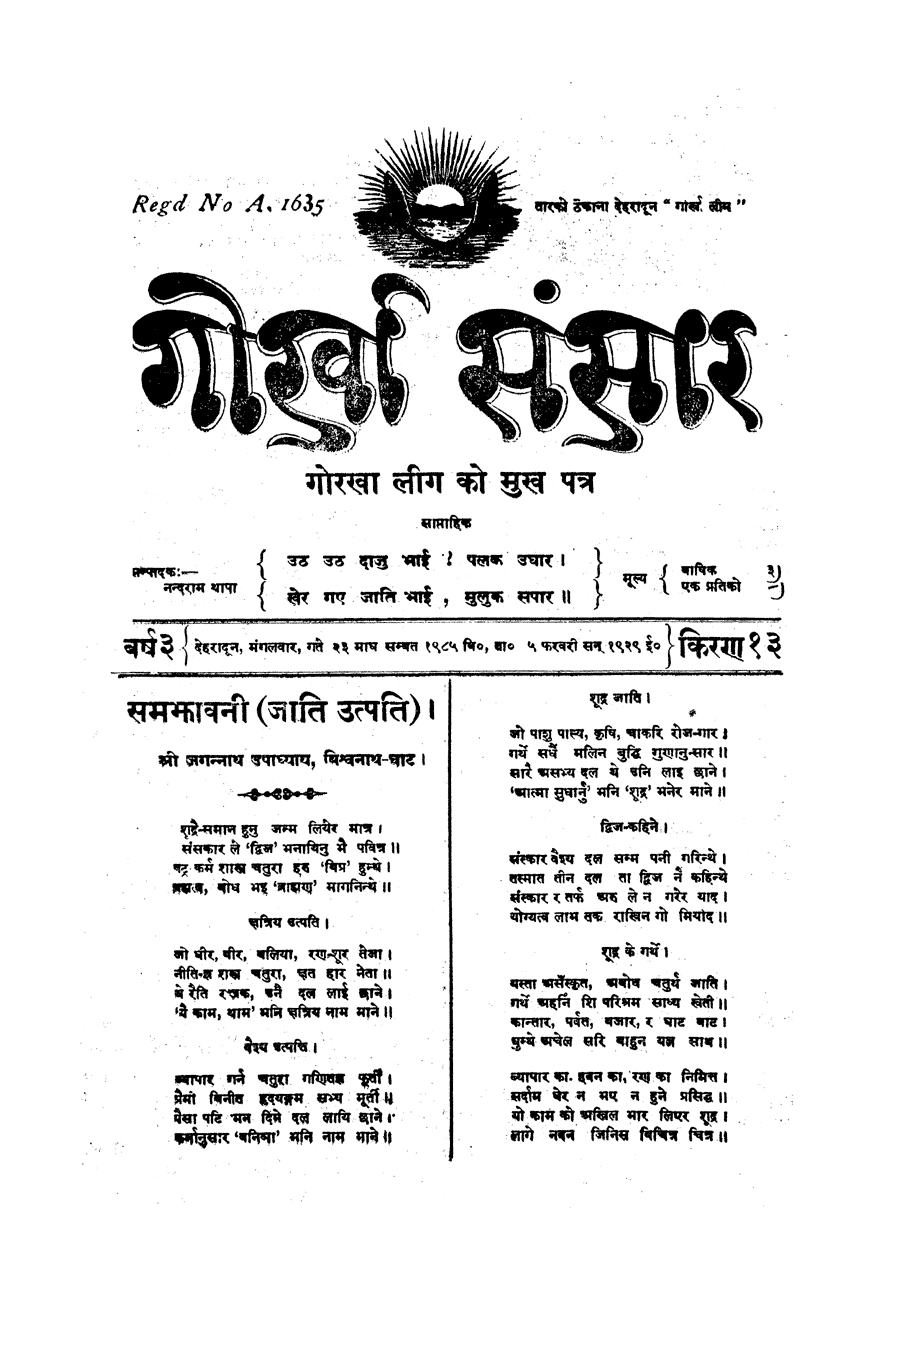 Gorkha Sansar, 5 Feb 1929, page 1